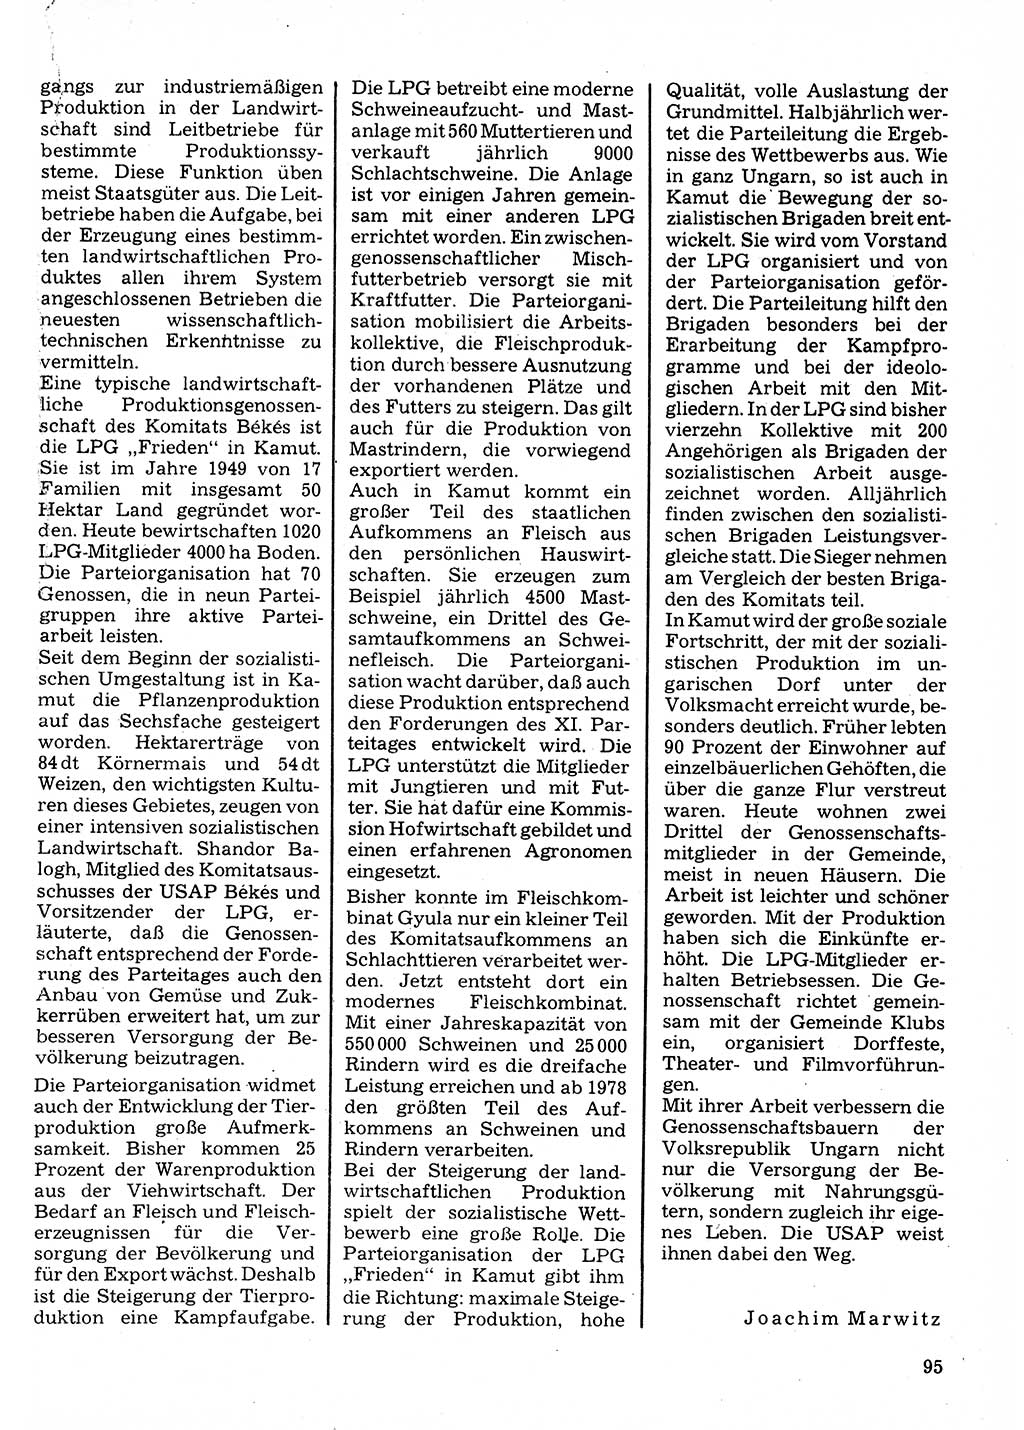 Neuer Weg (NW), Organ des Zentralkomitees (ZK) der SED (Sozialistische Einheitspartei Deutschlands) für Fragen des Parteilebens, 32. Jahrgang [Deutsche Demokratische Republik (DDR)] 1977, Seite 95 (NW ZK SED DDR 1977, S. 95)